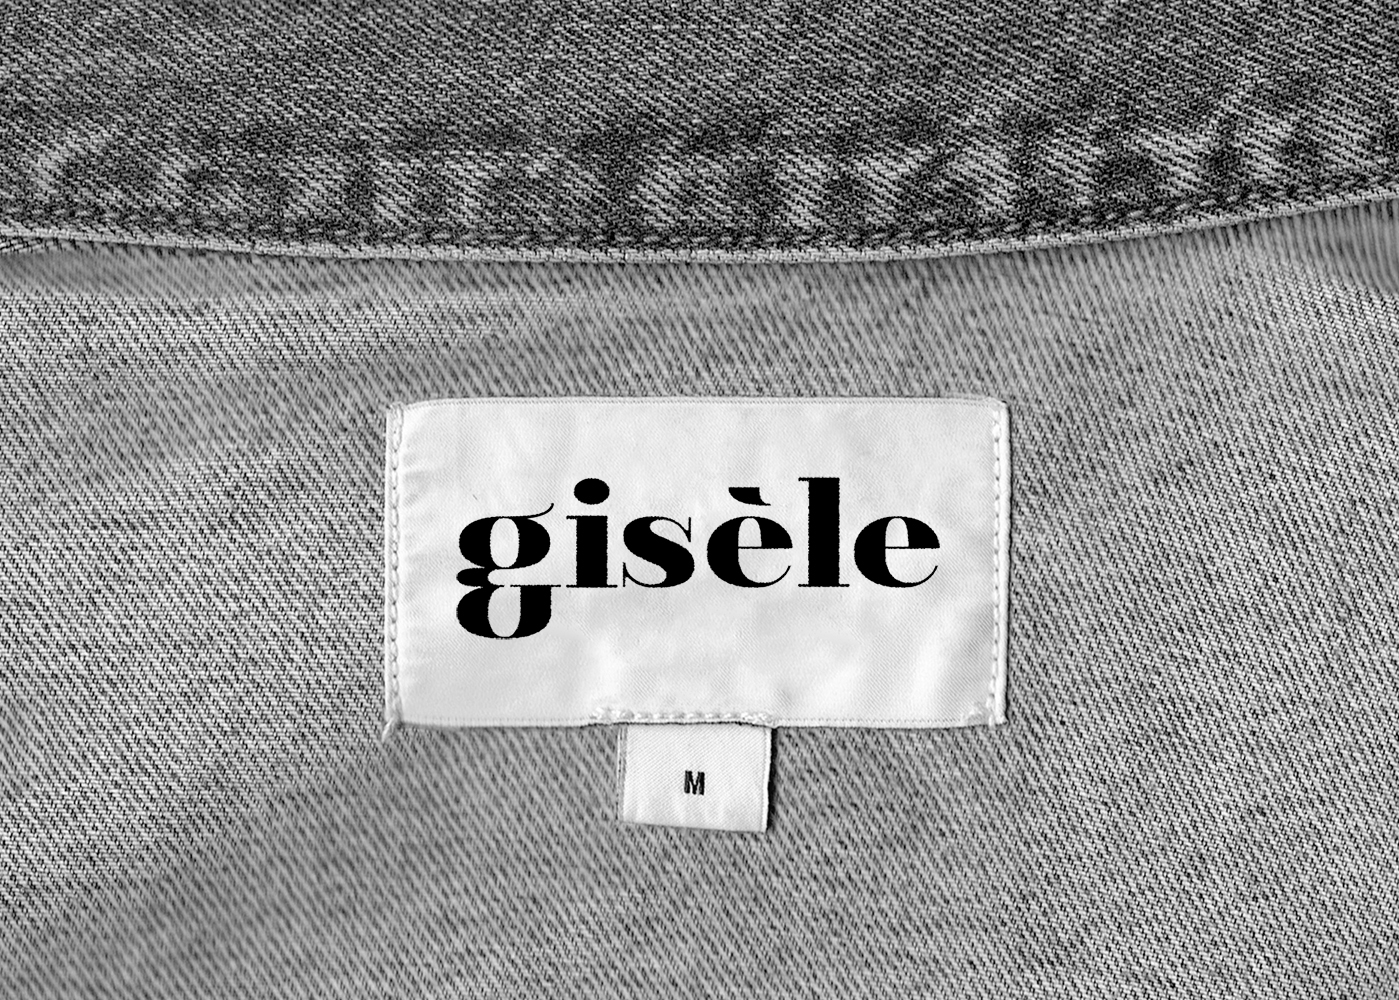 Photographie d'une étiquette brodée de la marque gisèle sur une pièce de vêtement en jeans